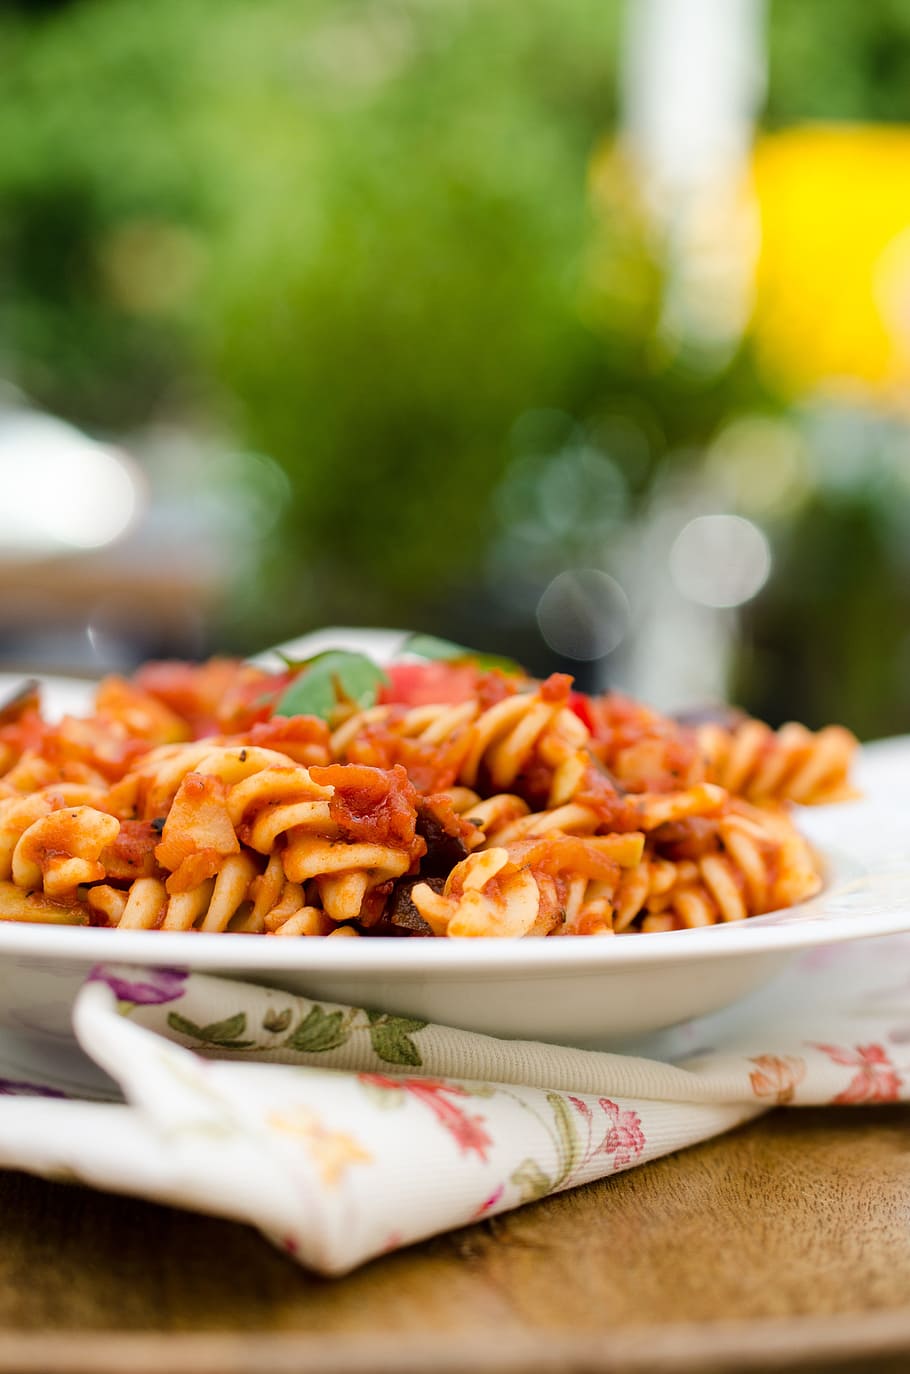 パスタ, トマトソース, イタリアンパスタ, 食べ物, 食べ物と飲み物, 鮮度, テーブル, すぐに食べられる, セレクティブフォーカス, クローズアップ